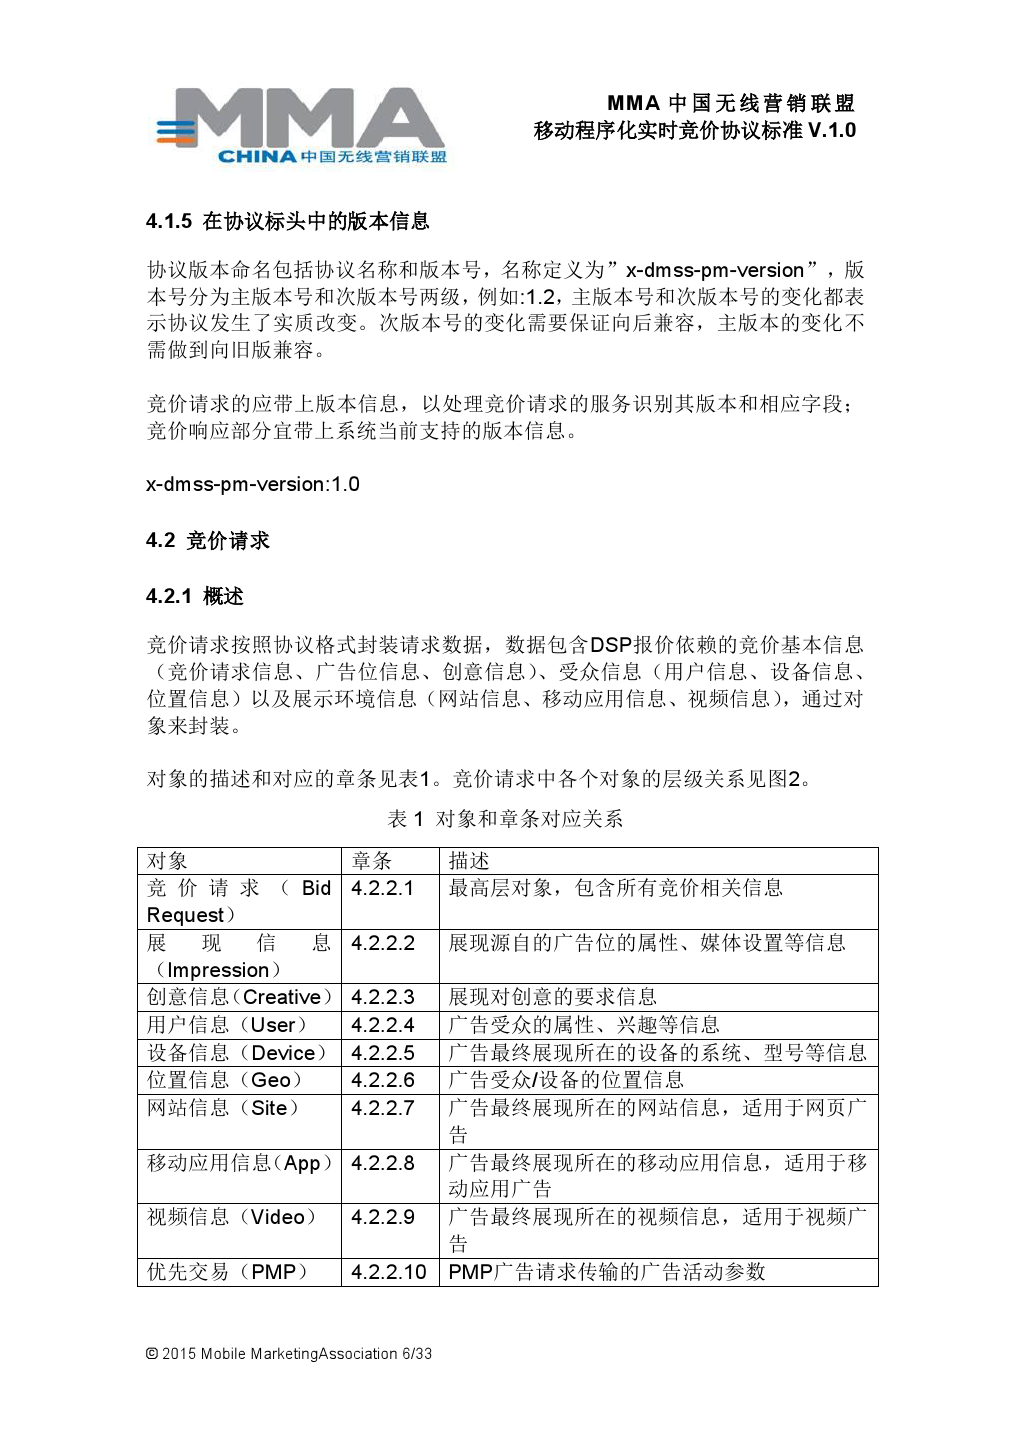 MMA中国无线营销联盟移动程序化实时竞价协议标准V.1.0_000007